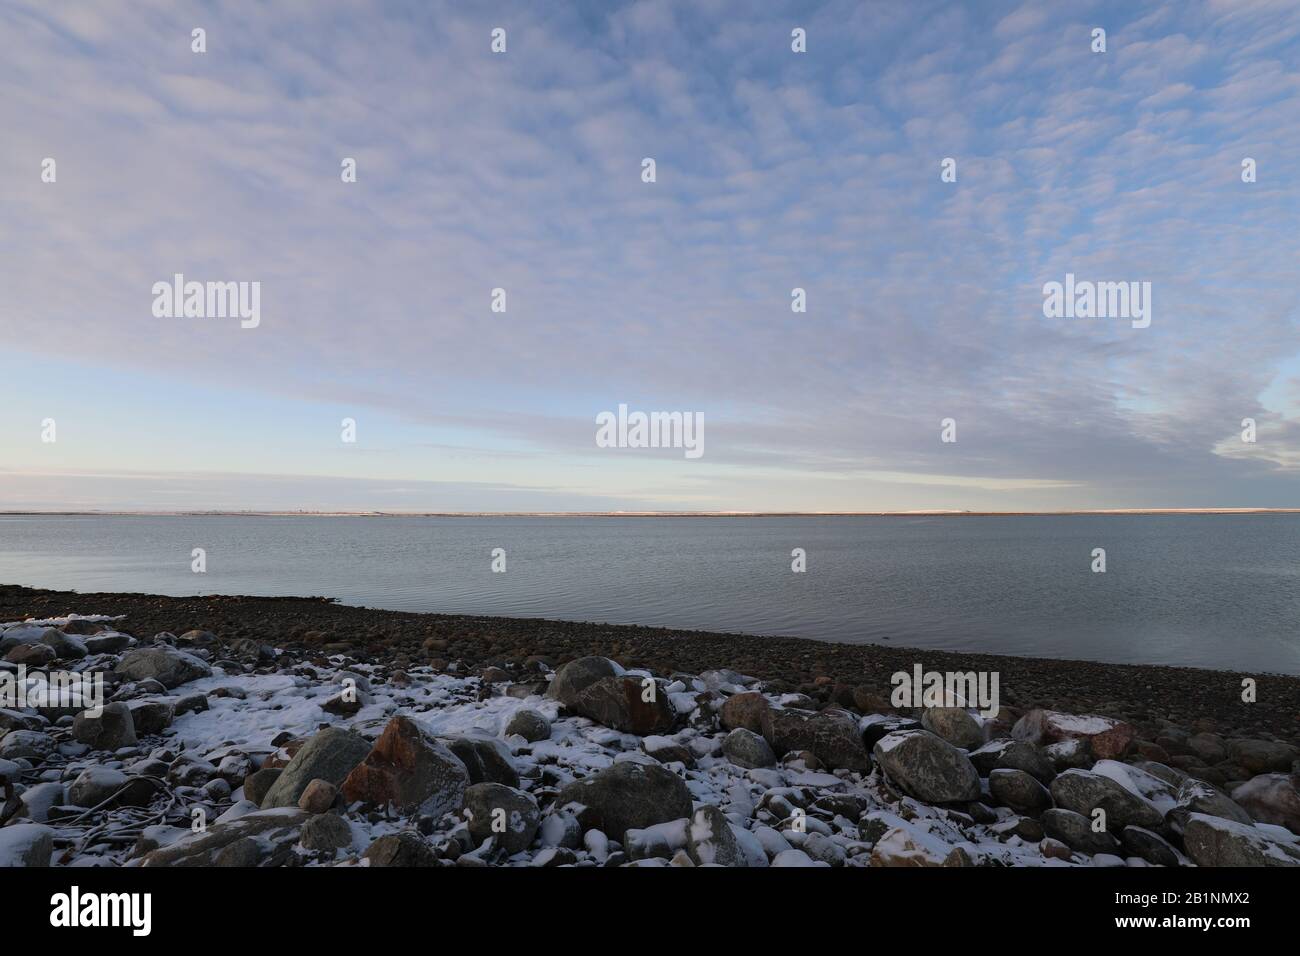 Paysage arctique plat à la fin de l'automne avec neige au sol et ciel bleu avec des nuages moelleux, près d'Arviat Nunavut Canada Banque D'Images